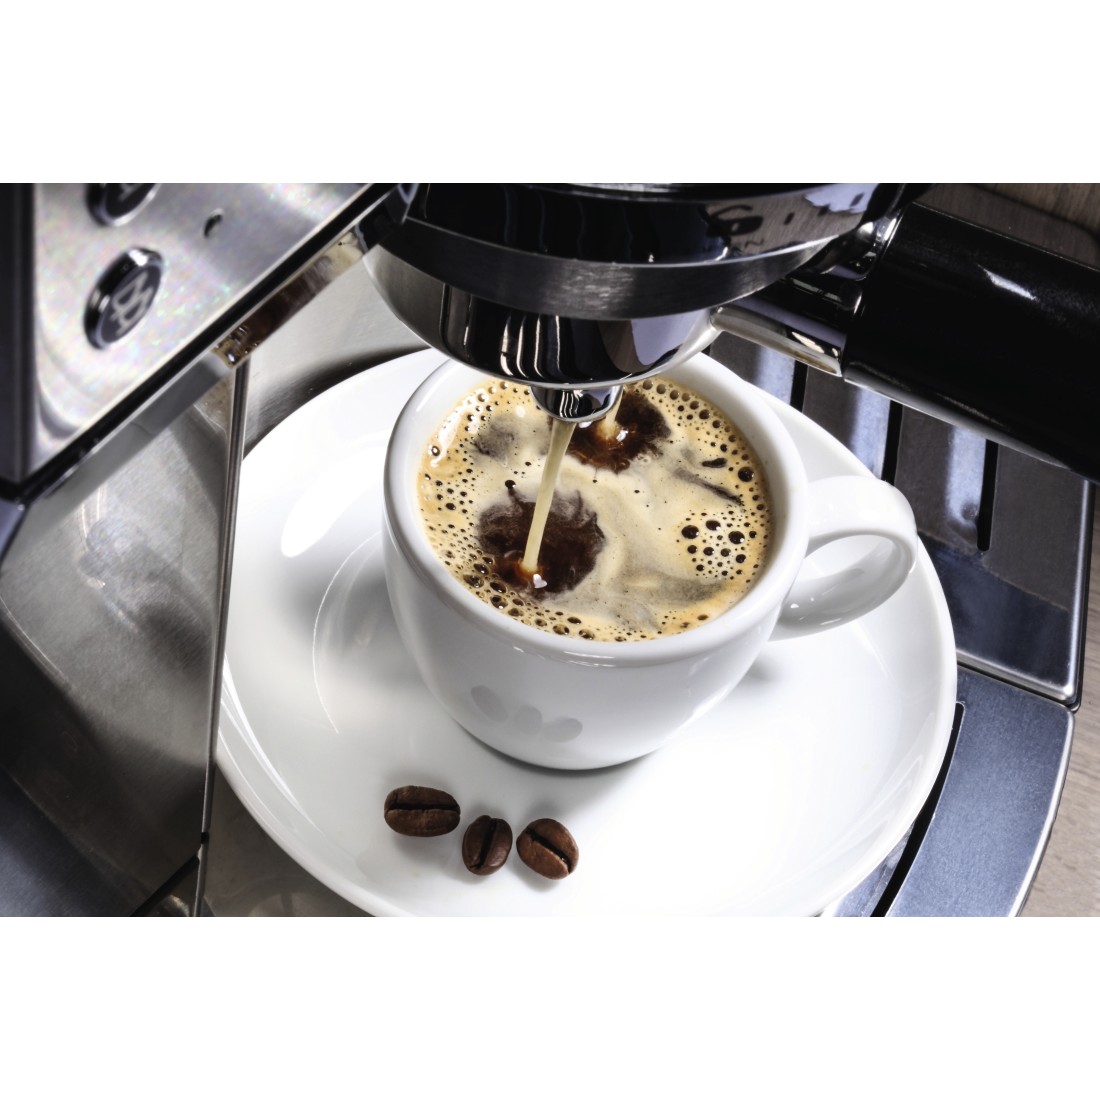 awx2 Druckfähige Anwendung 2 - Xavax, Dauerfilter für Kaffeemaschine, Ersatz für Filtergröße 4